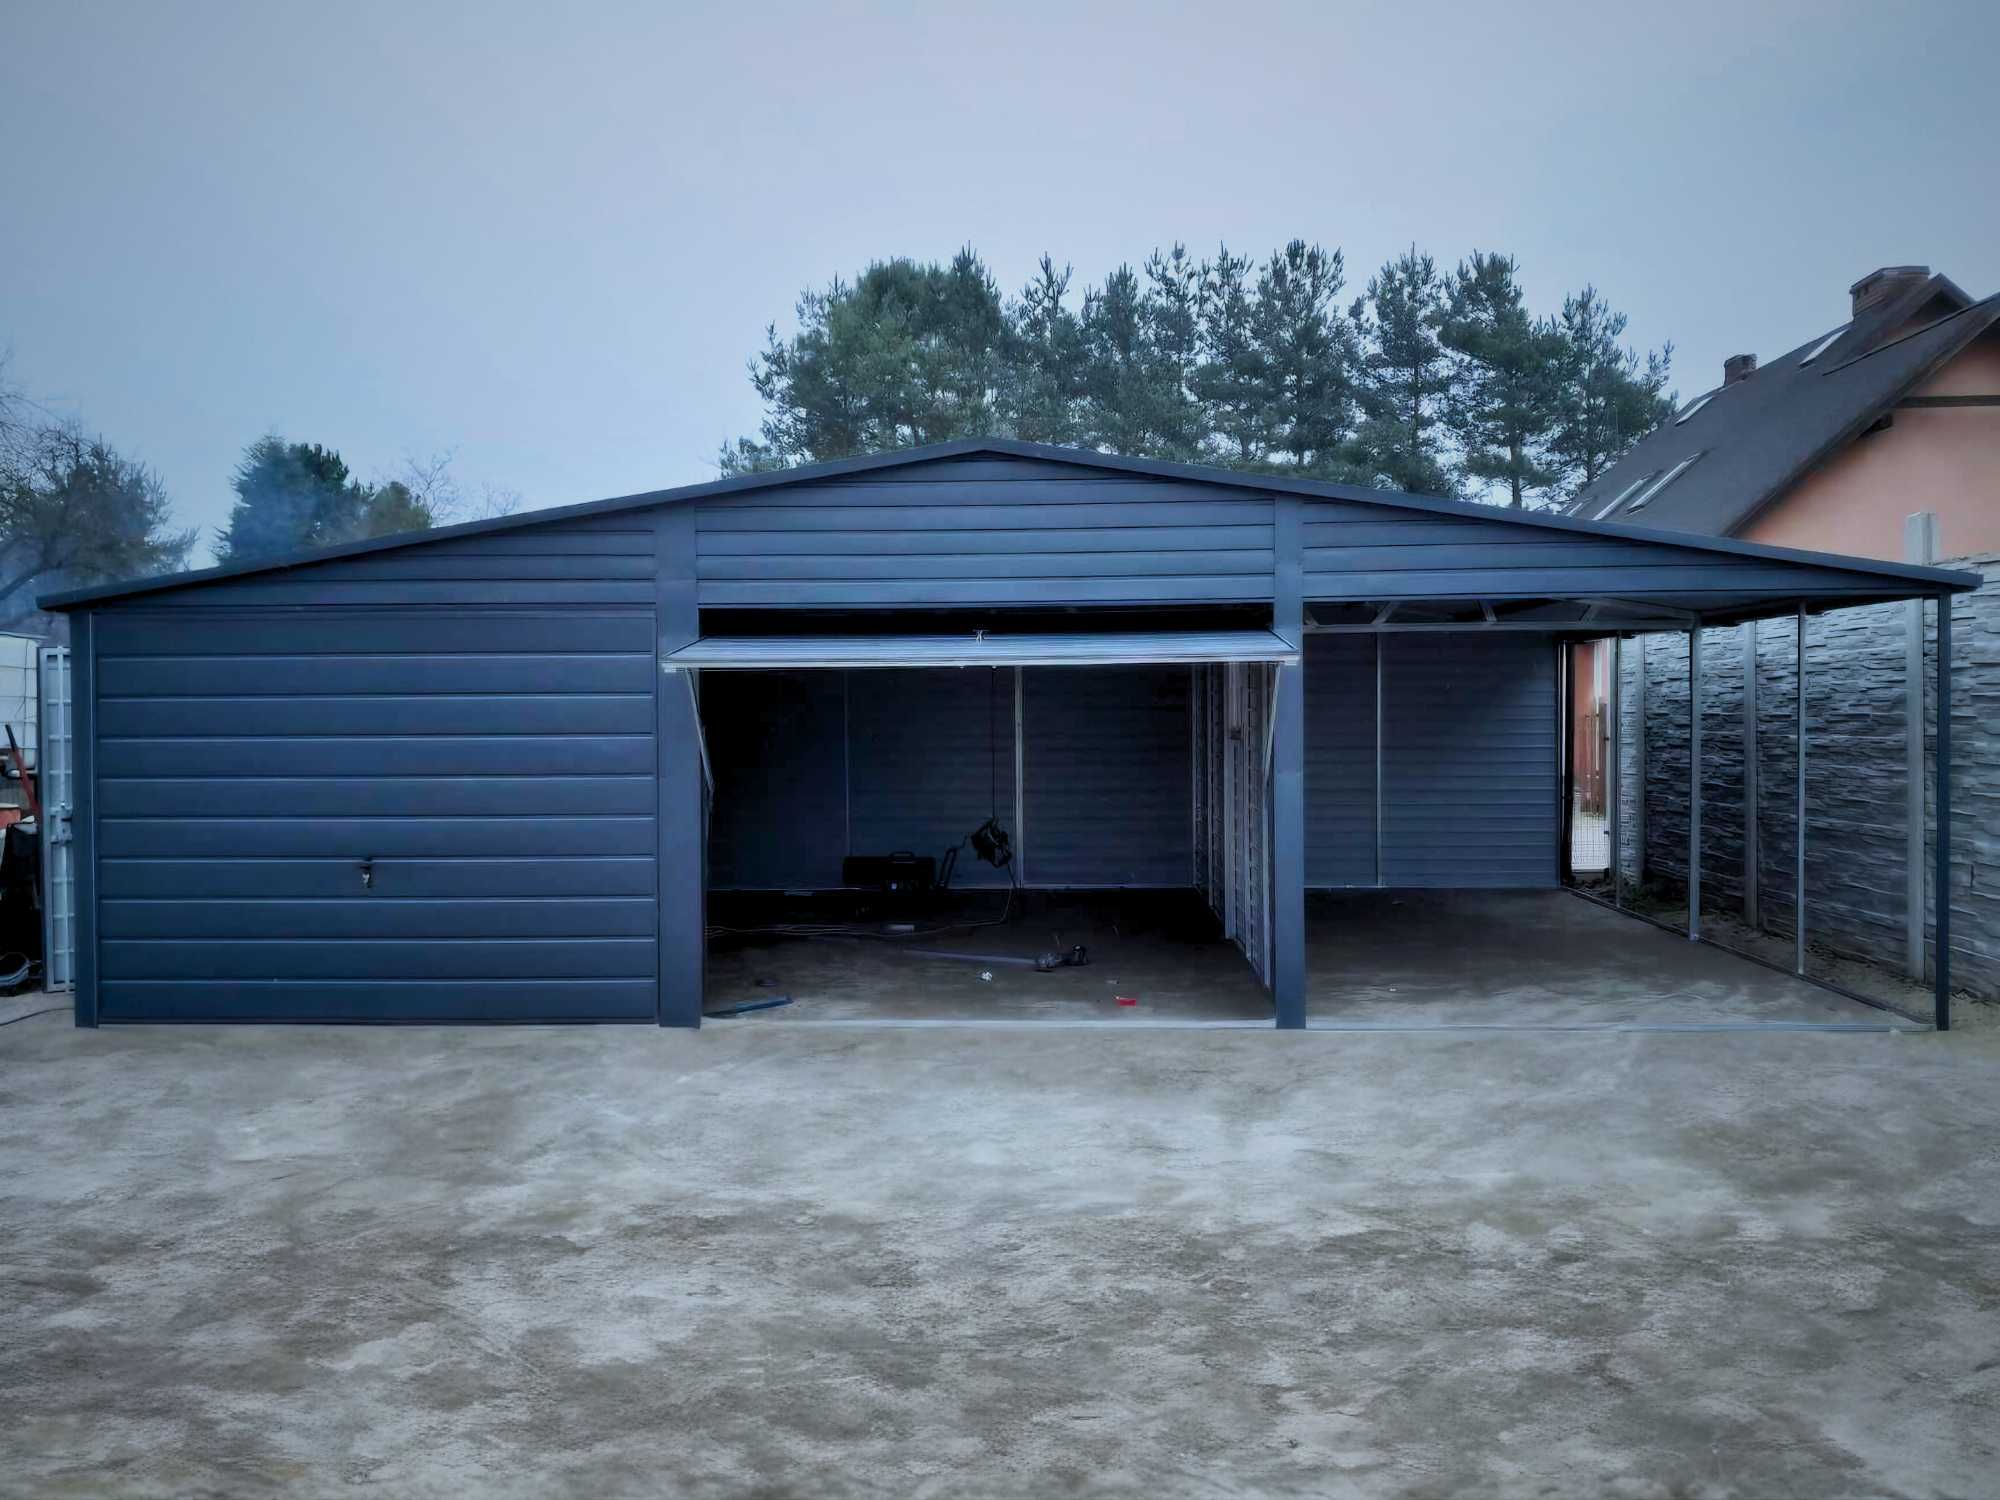 Garaż blaszany schowek na meble garaz na każdy wymiar 9x5 (10x6 11x7)